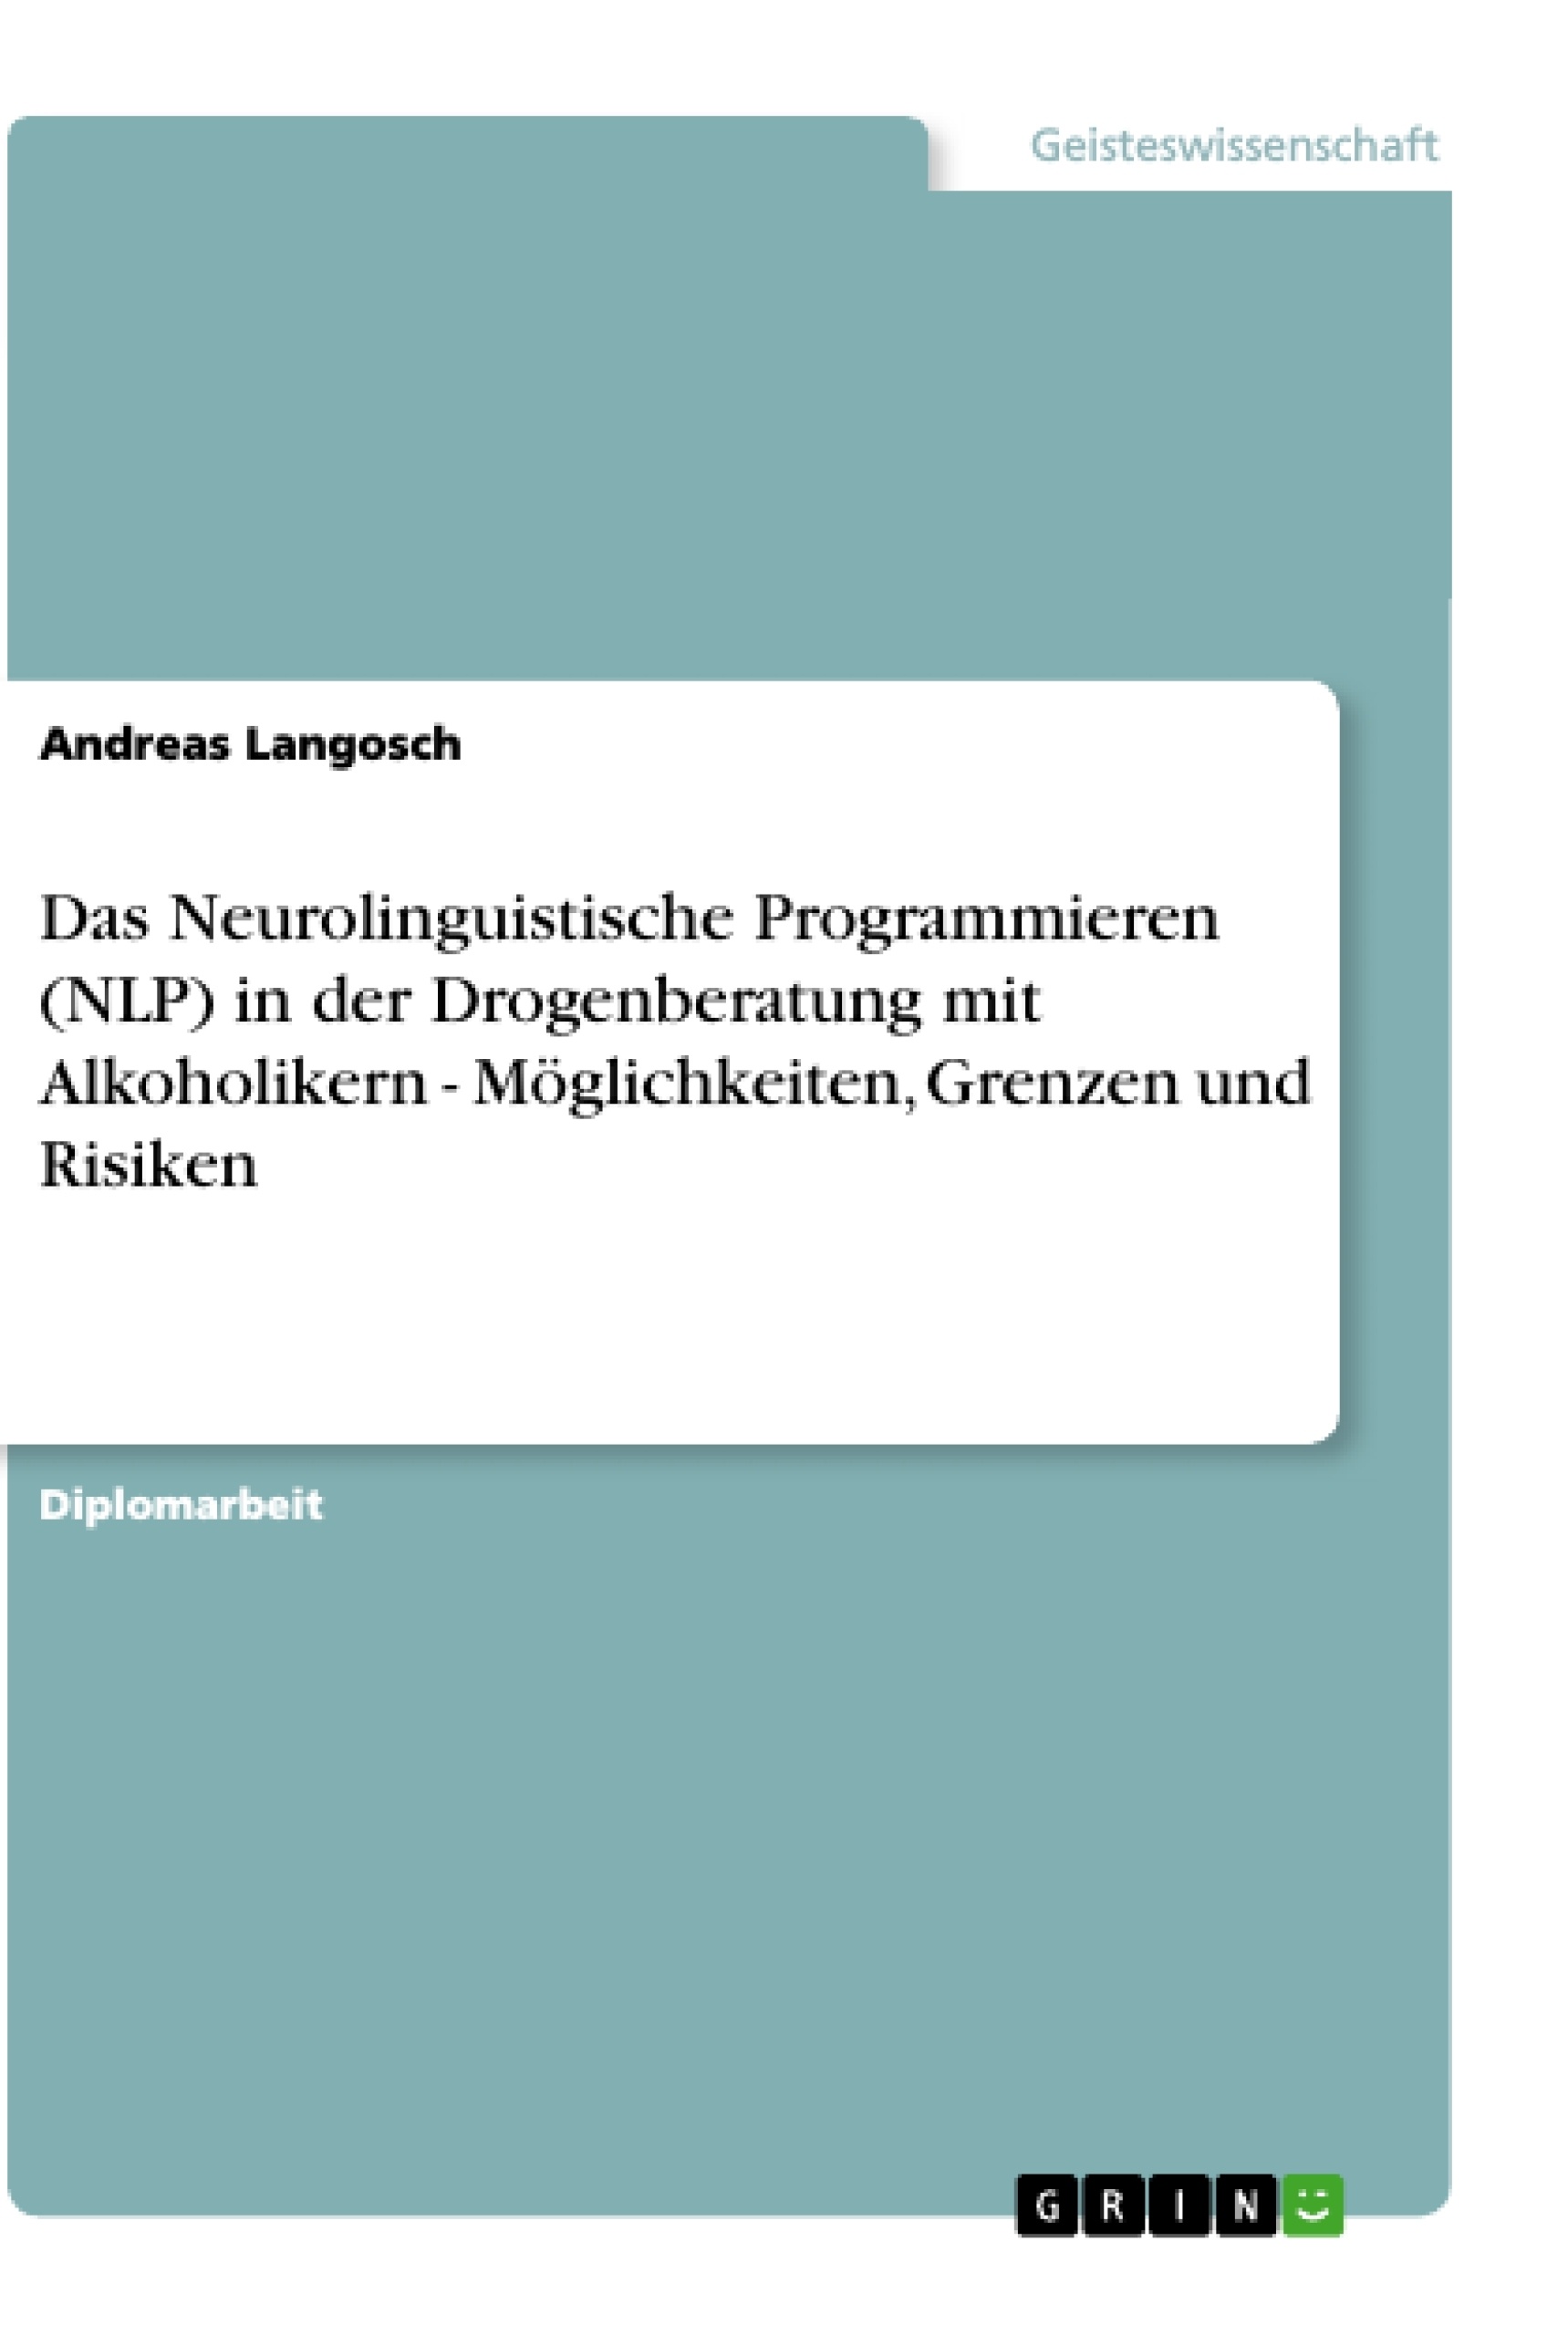 Título: Das Neurolinguistische Programmieren (NLP) in der Drogenberatung mit Alkoholikern - Möglichkeiten, Grenzen und Risiken